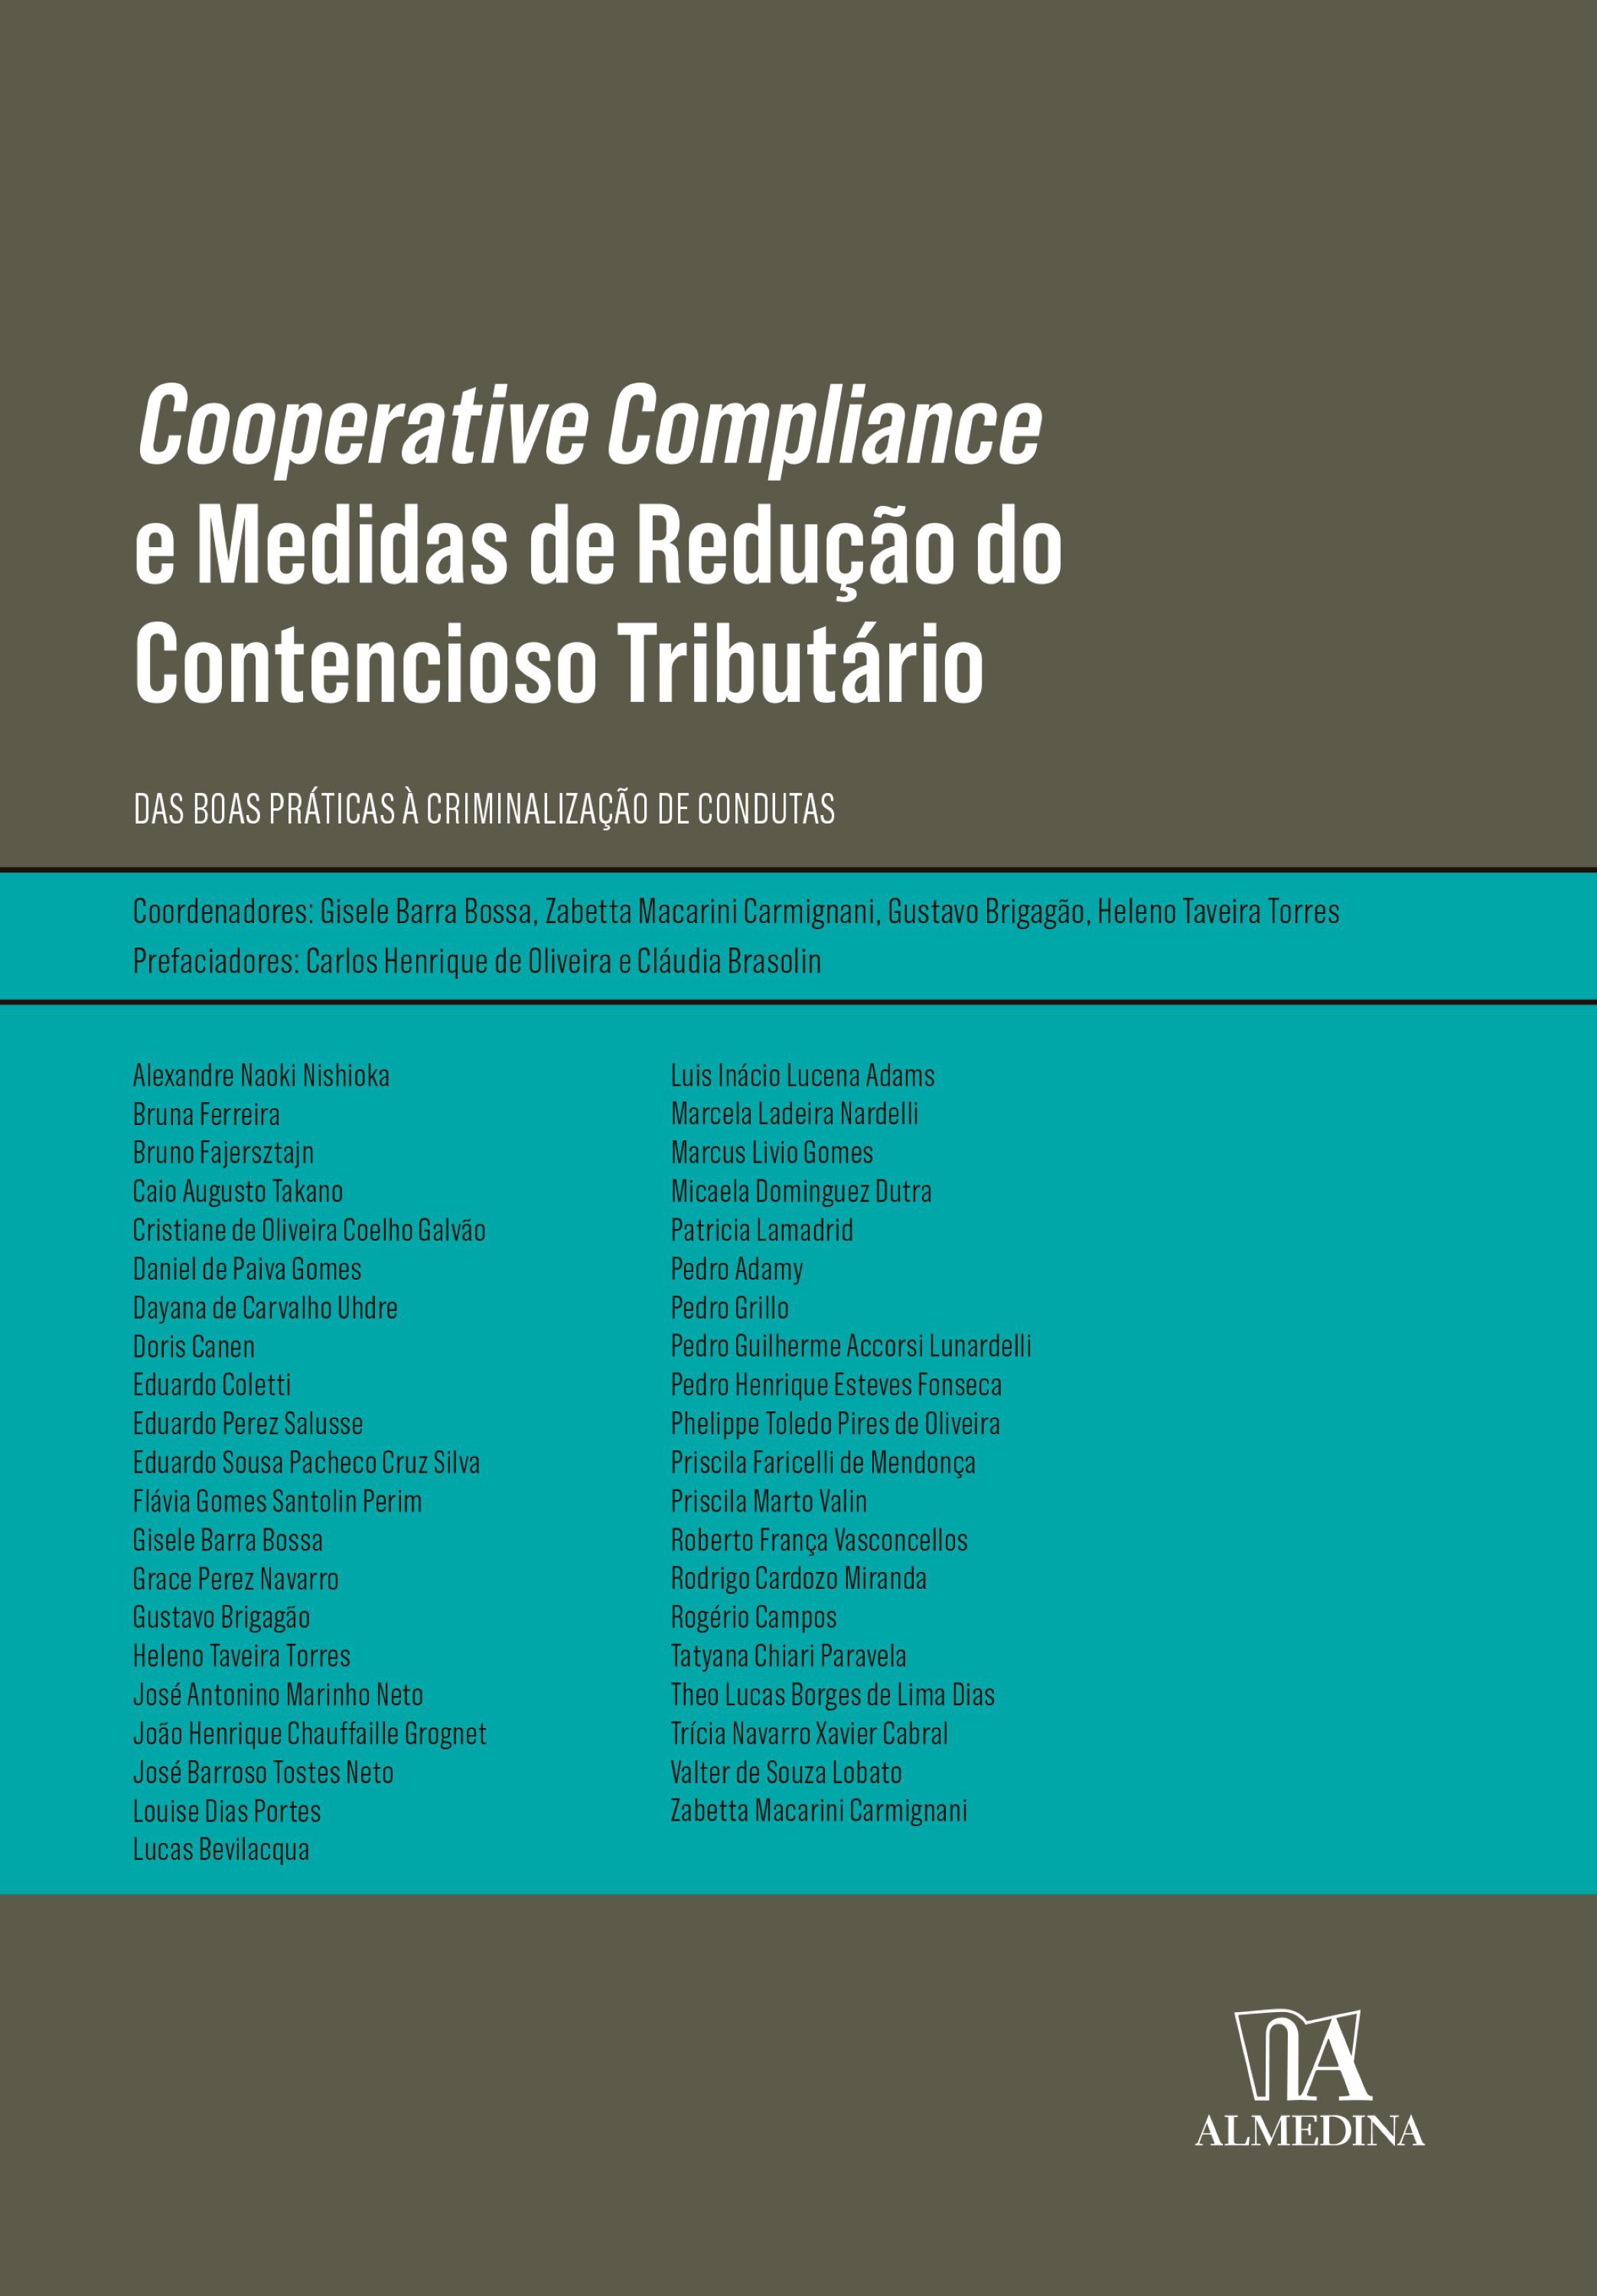 Cooperative Compliance e Medidas de Redução do Contencioso Tributário